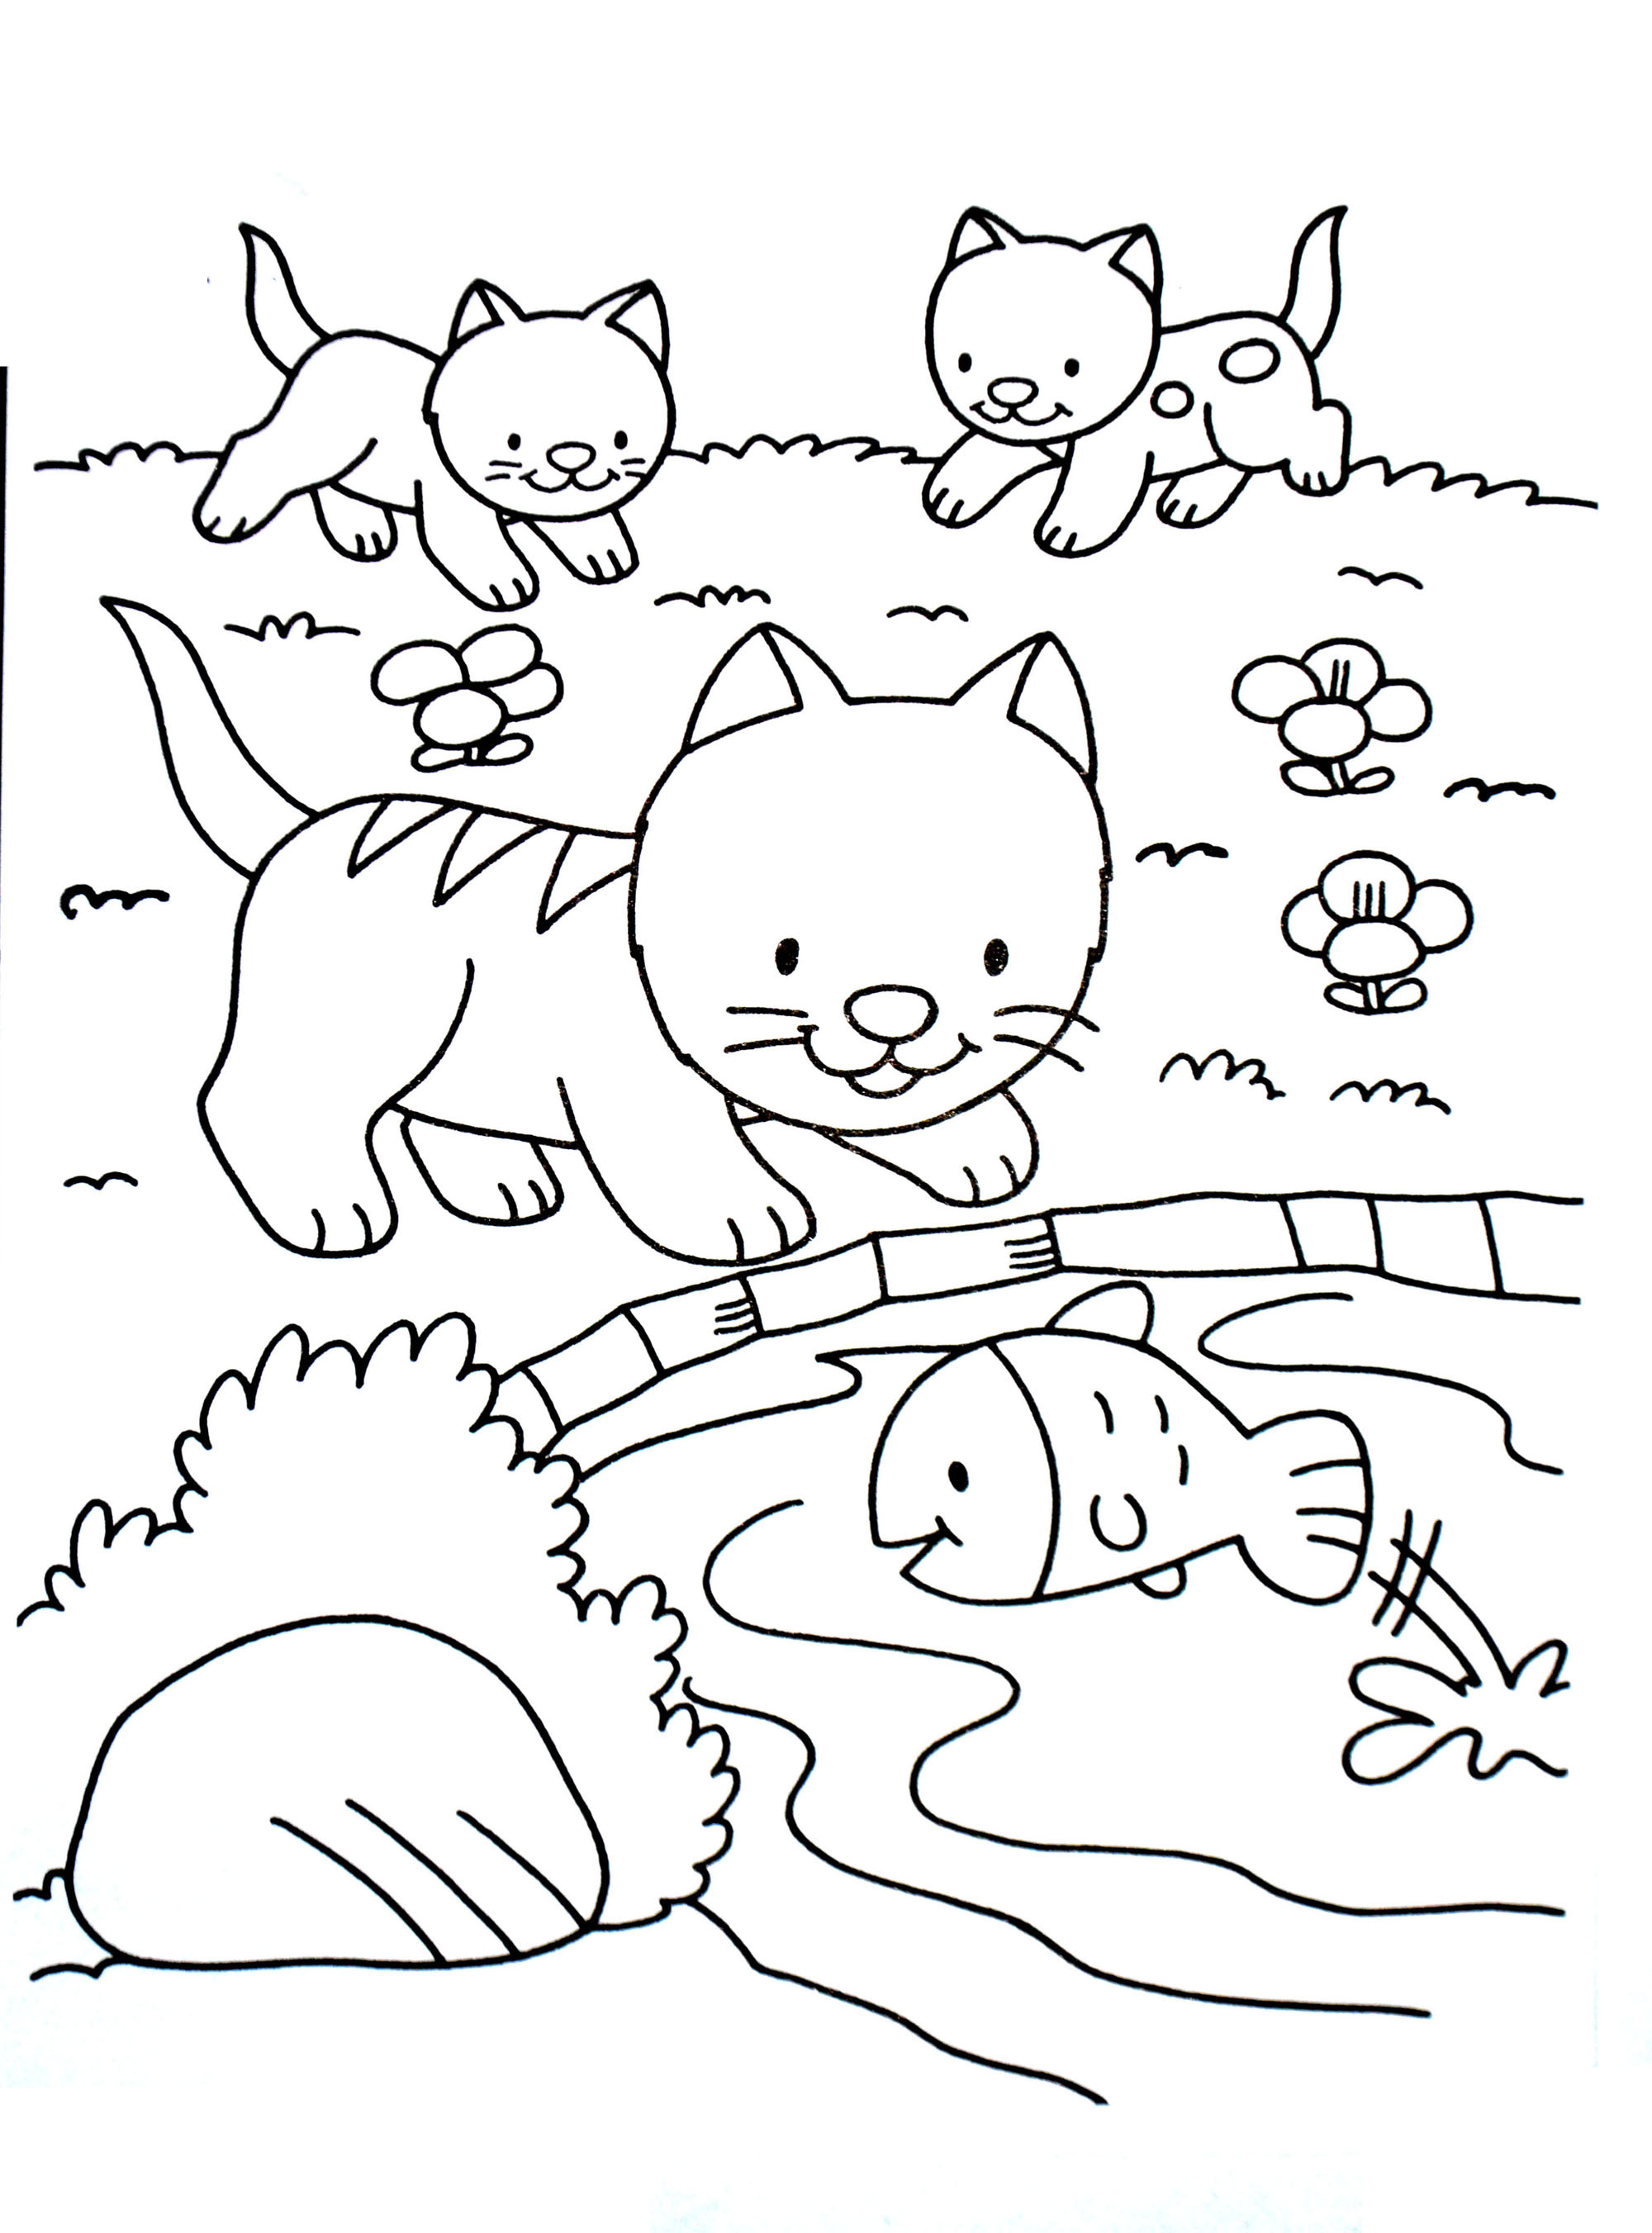 Desenho de gato fácil de colorir para as crianças